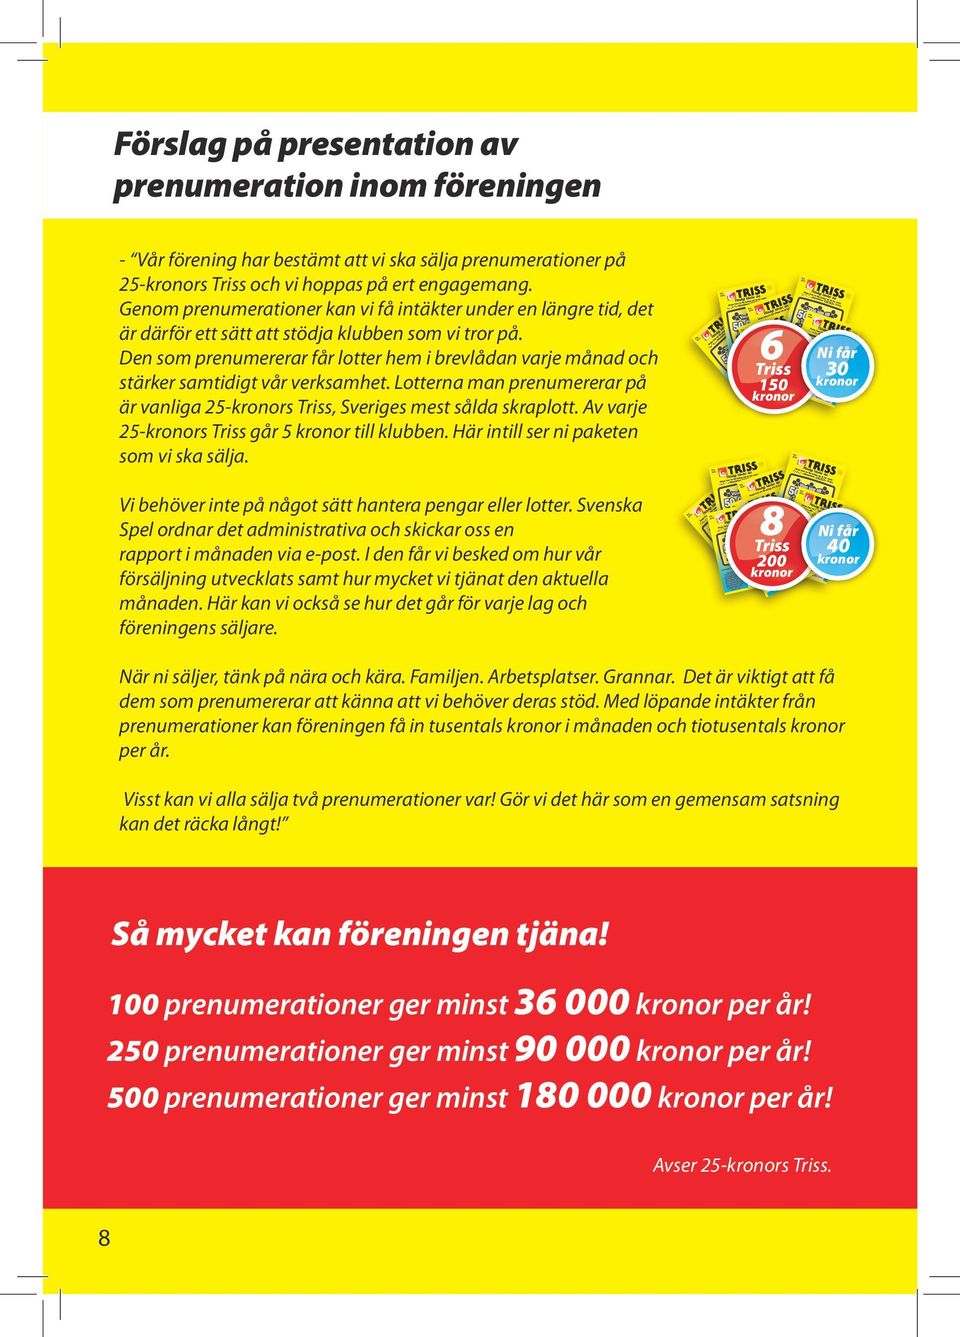 Den som prenumererar får lotter hem i brevlådan varje månad och stärker samtidigt vår verksamhet. Lotterna man prenumererar på är vanliga 25-kronors Triss, Sveriges mest sålda skraplott.